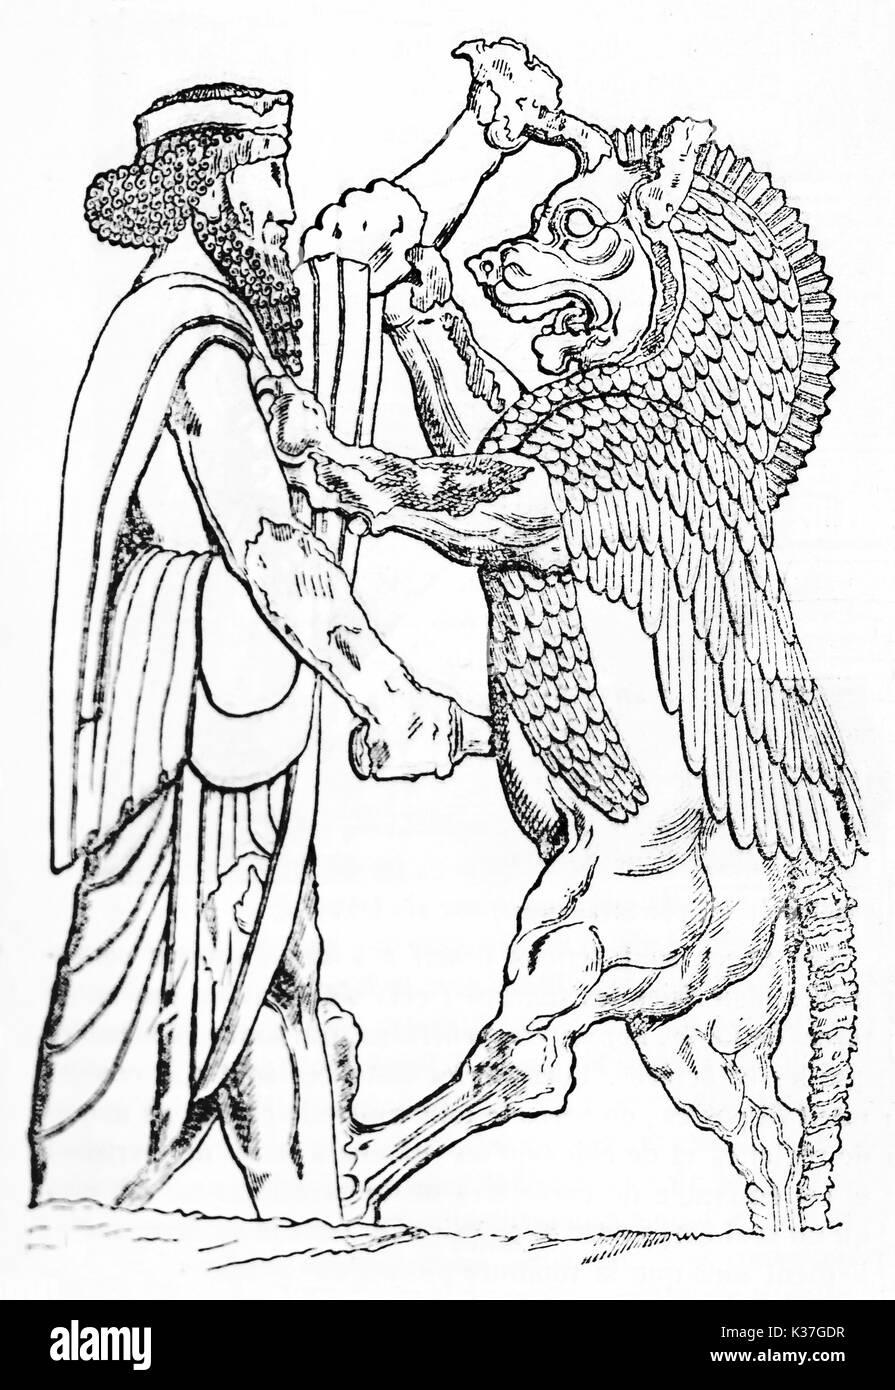 Alte Kampf mit einem Monster, beide Kämpfer in der Seitenansicht angezeigt. Persepolis Flachrelief. Alte Illustration von Muret, auf Magasin Pittoresque, Paris, 1834 veröffentlicht. Stockfoto